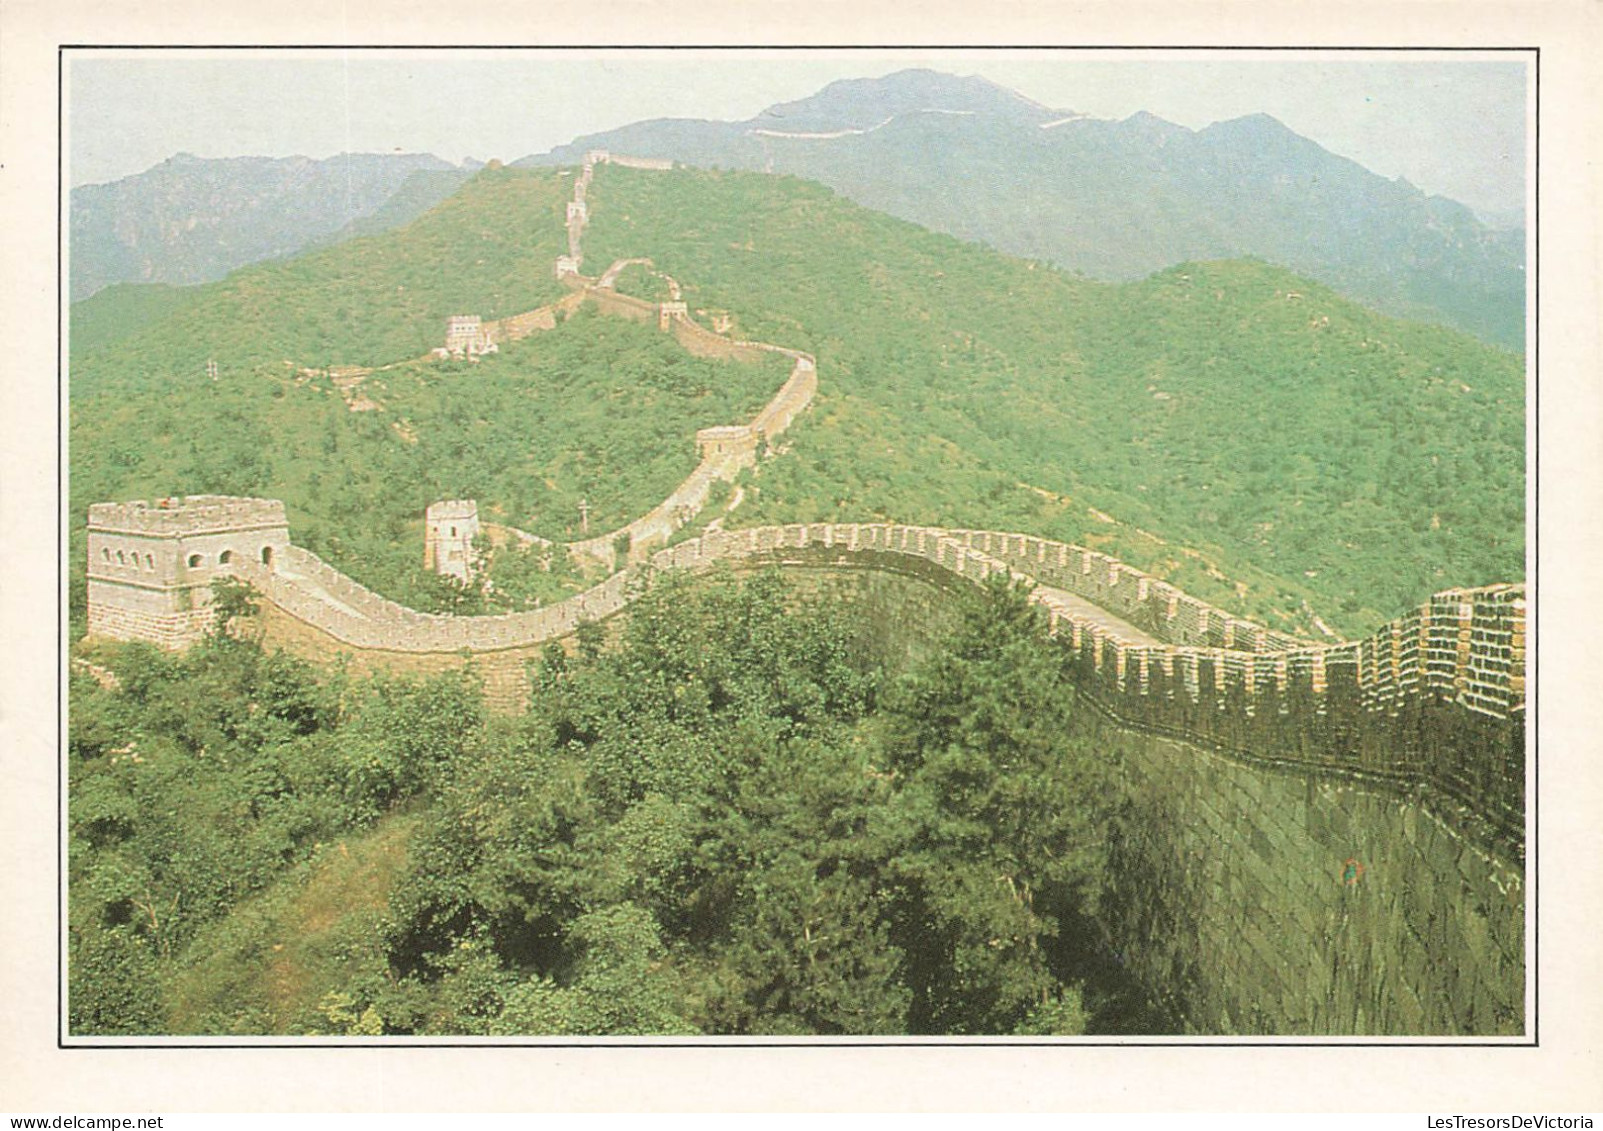 CHINE - La Grande Muraille De Chine - Colorisé - Carte Postale - China